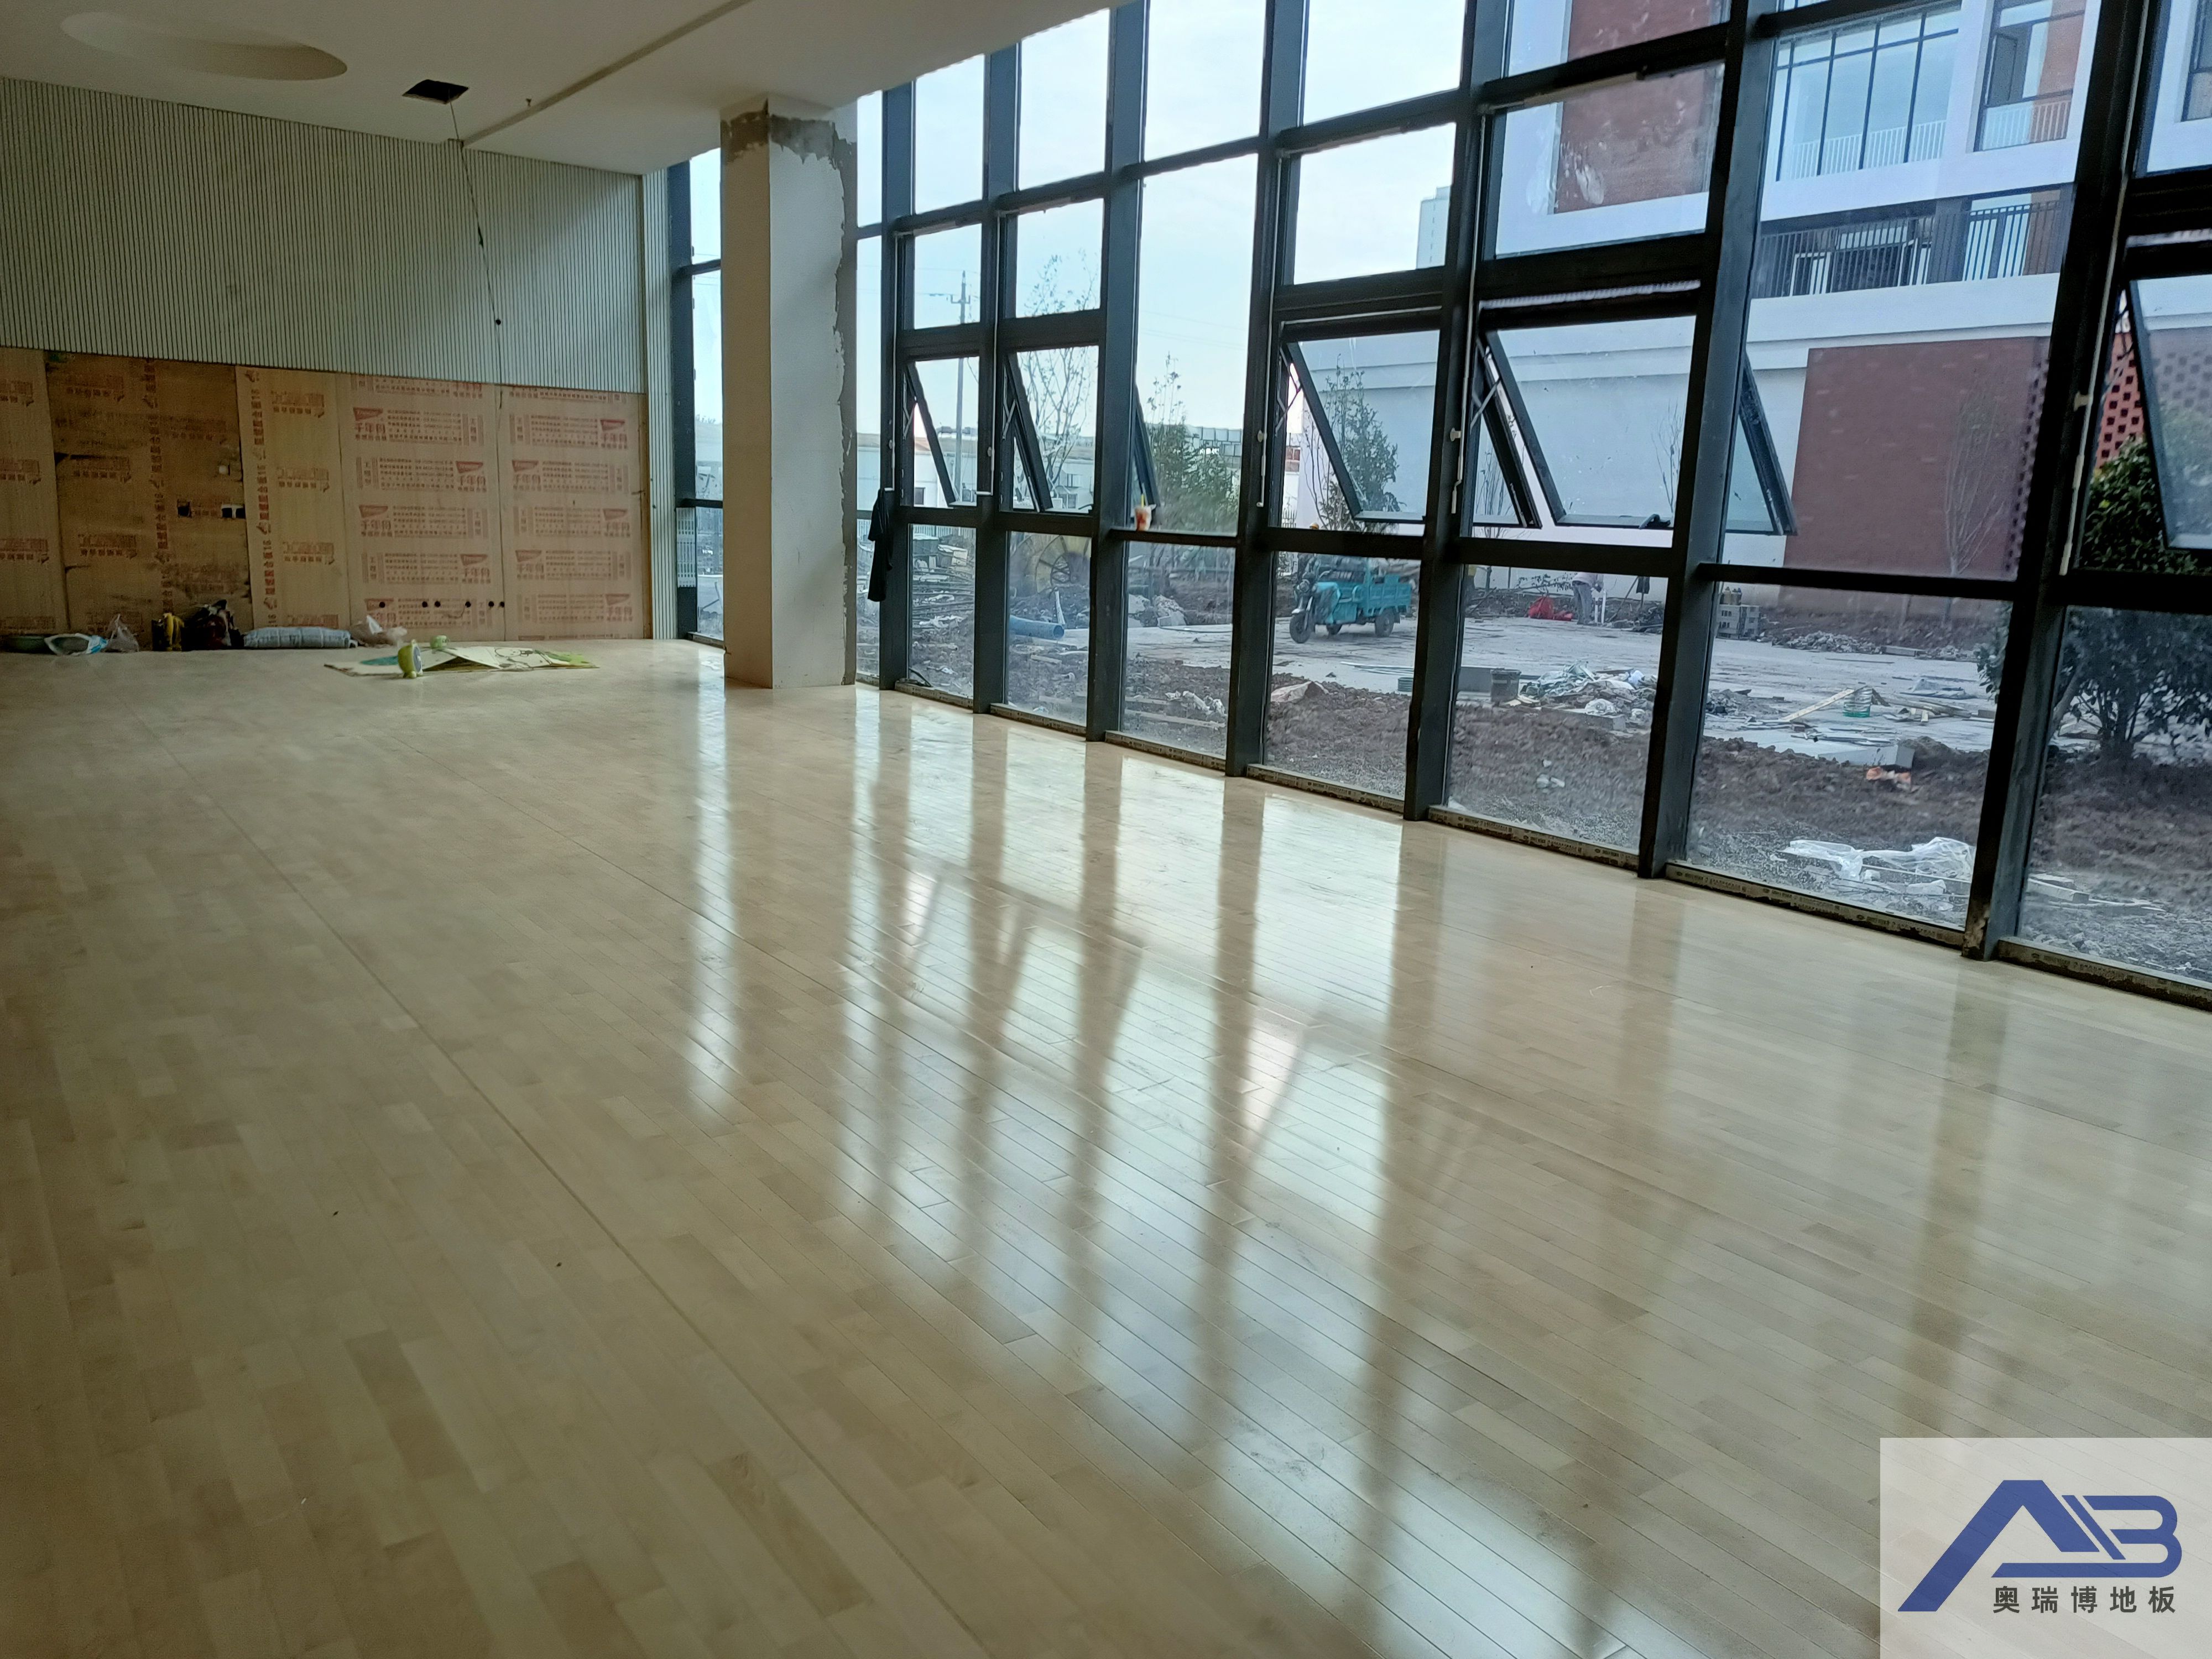 山东青岛中央民族大学附中舞蹈教室运动木地板项目